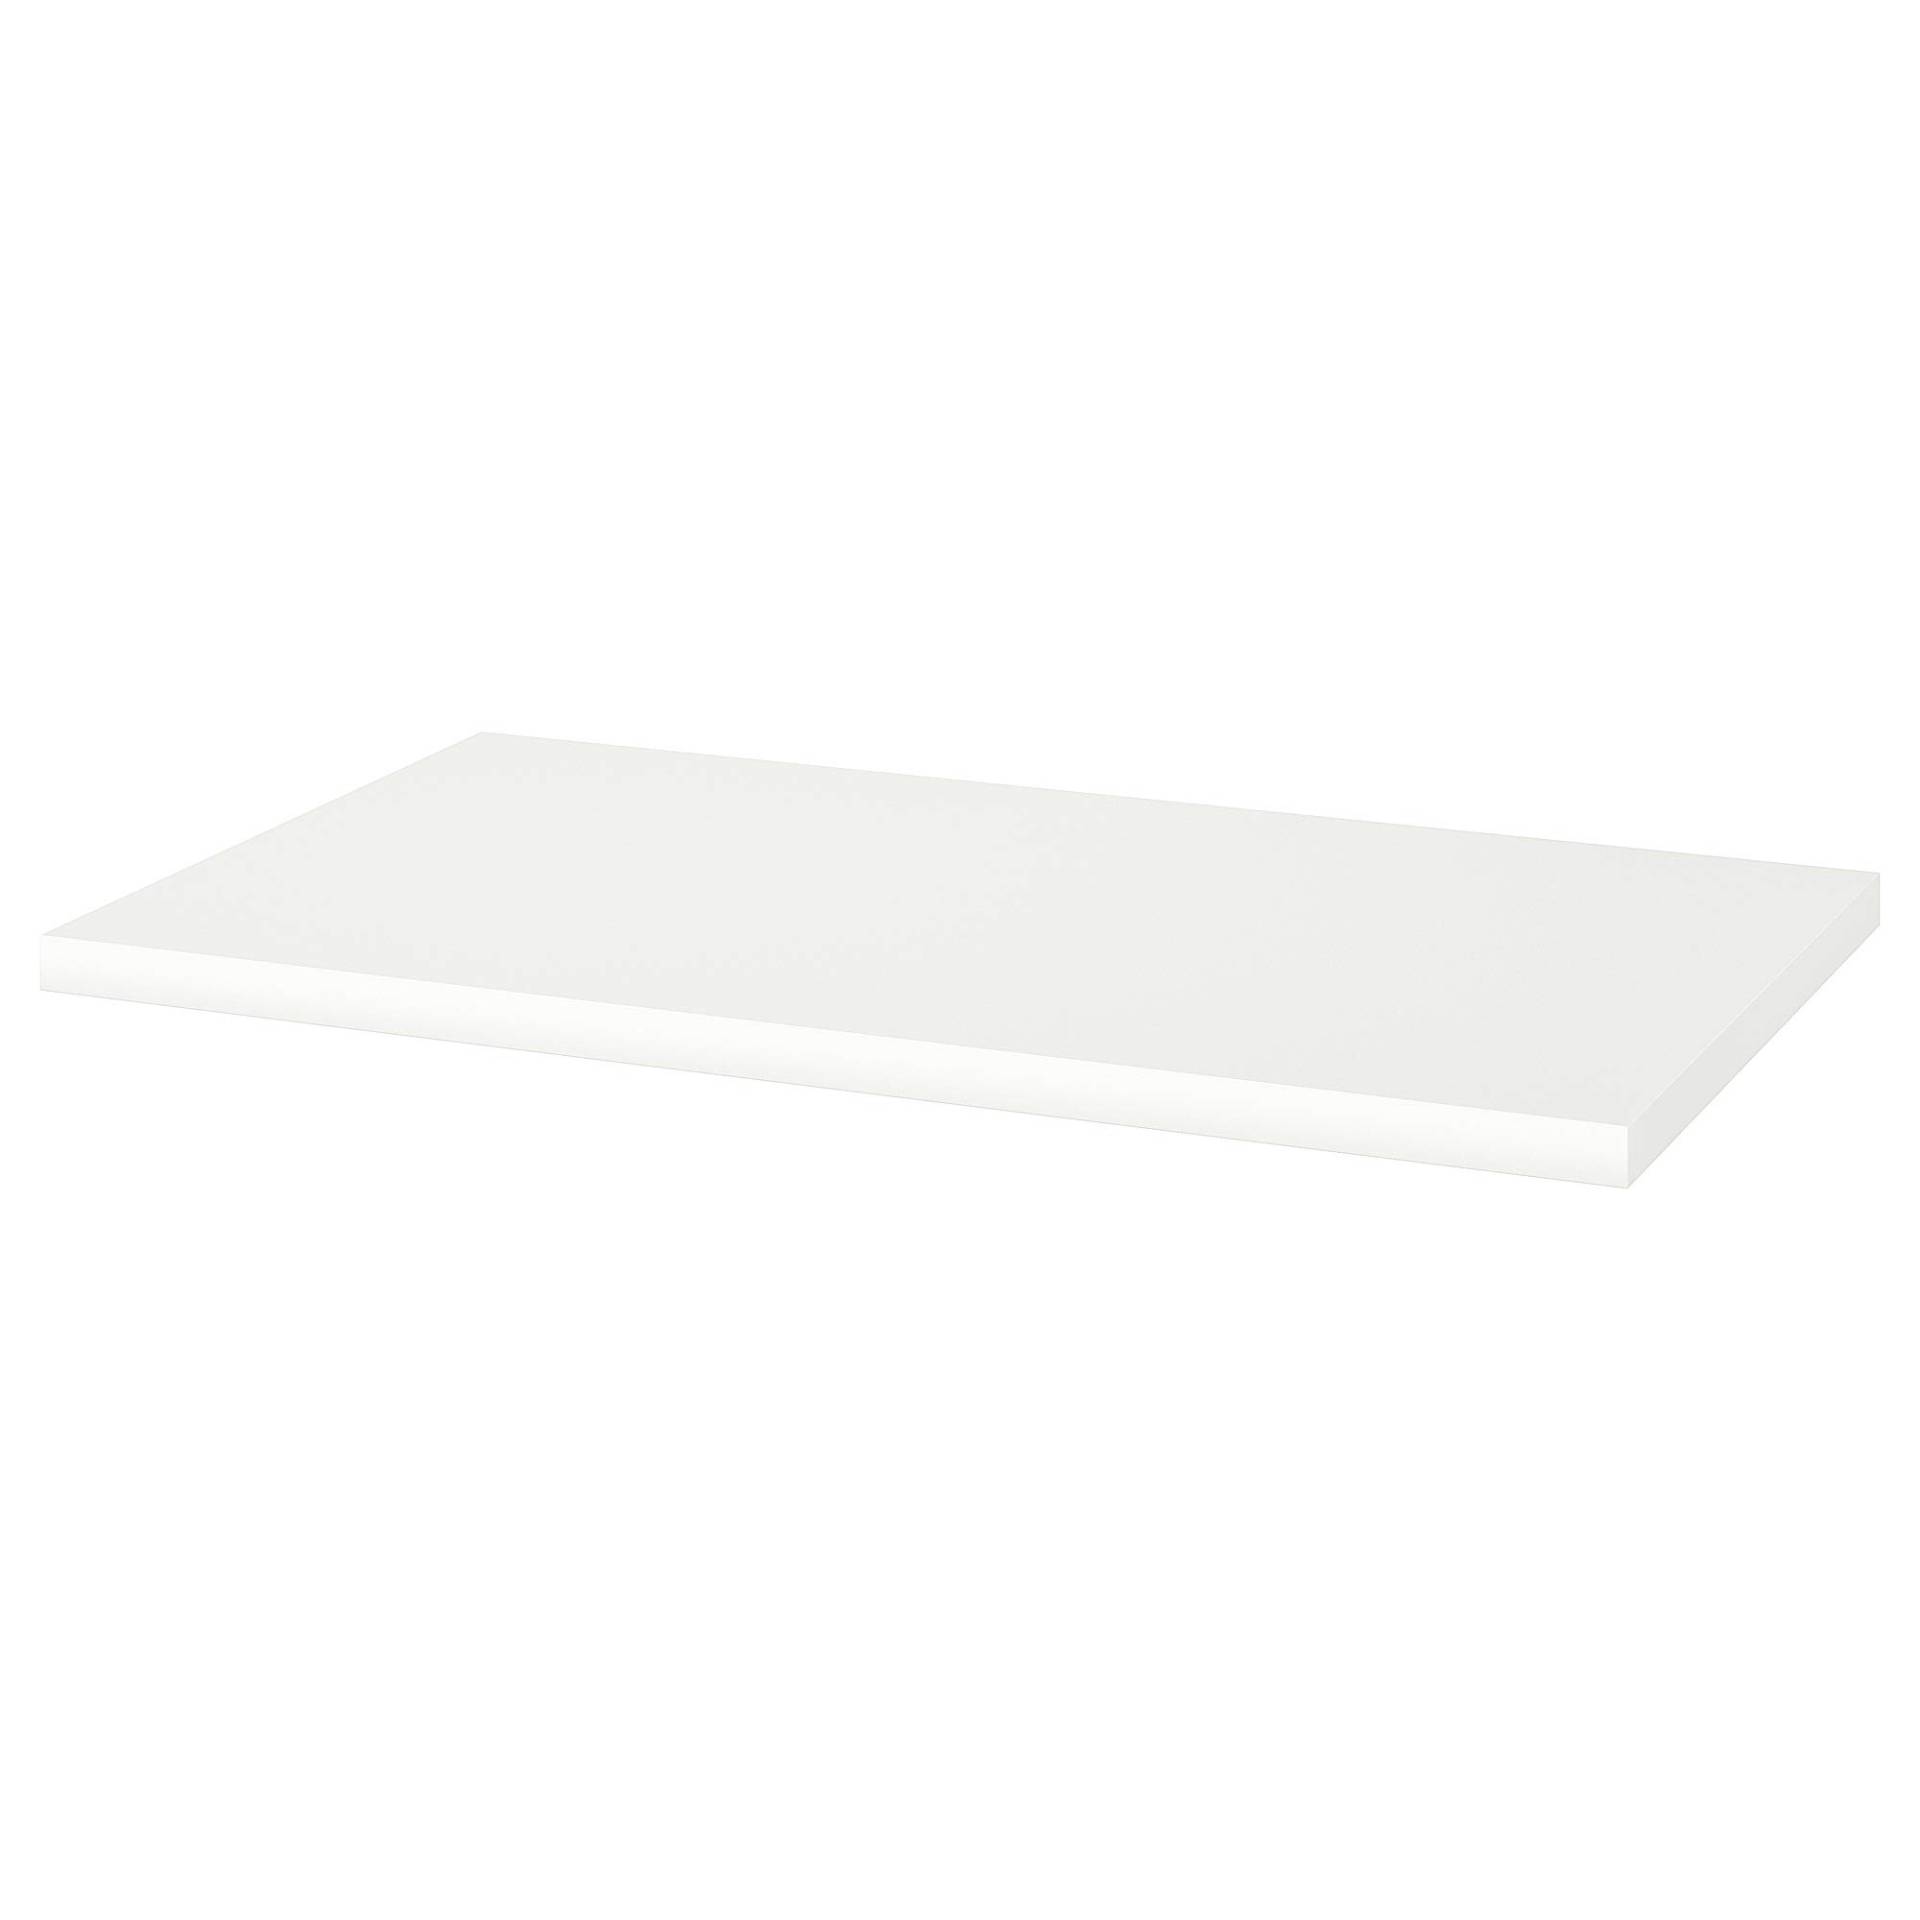 LINNMON Tischplatte 60x100cm weiß von ProTuning